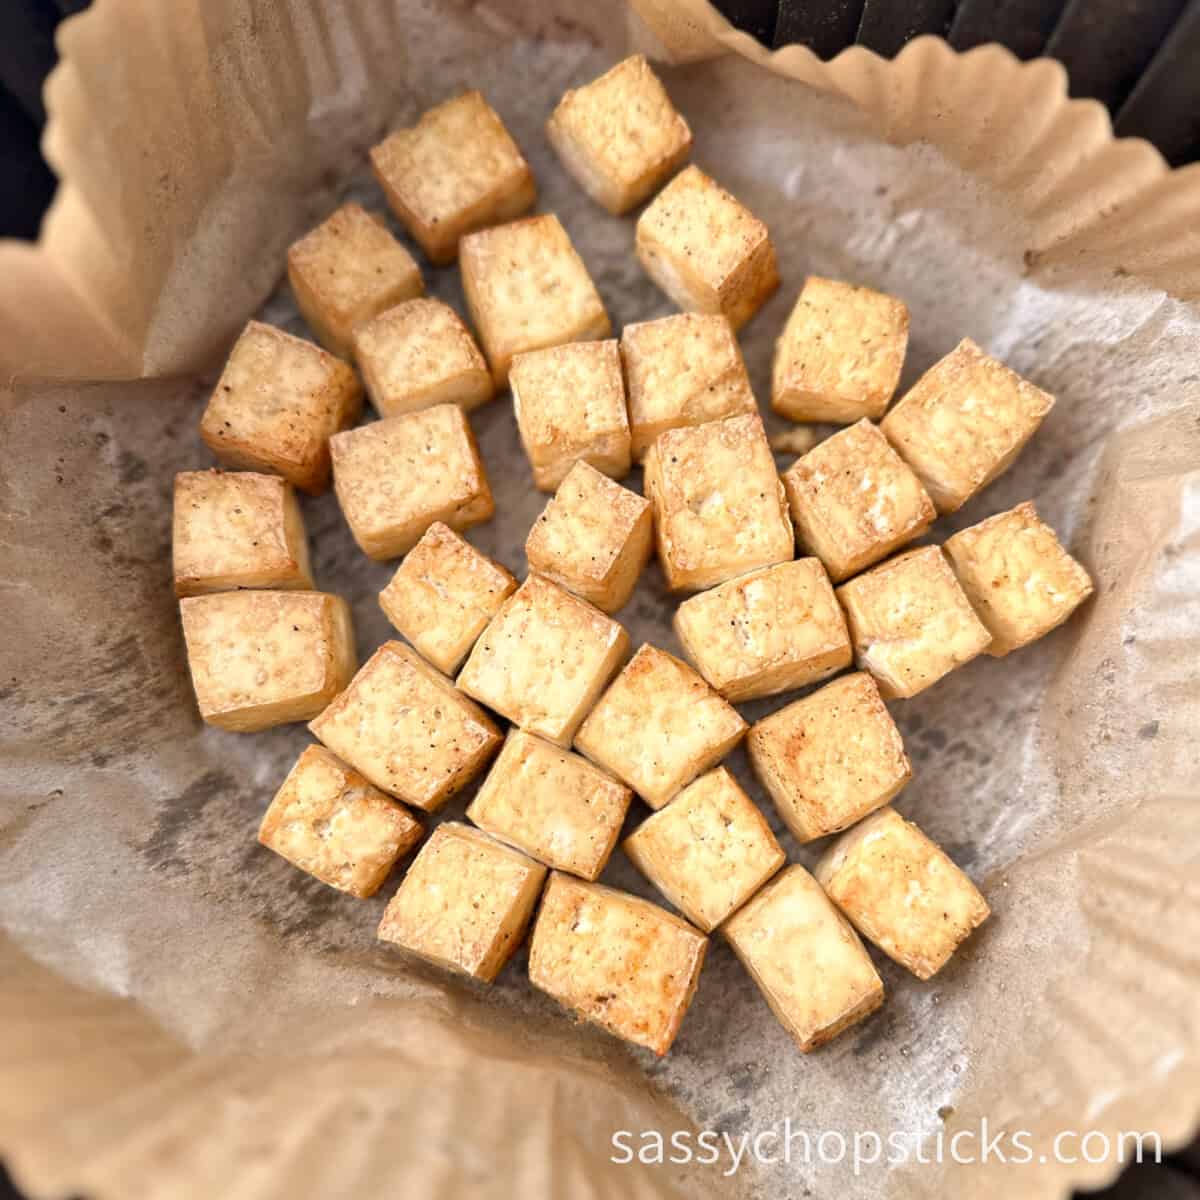 air fried tofu